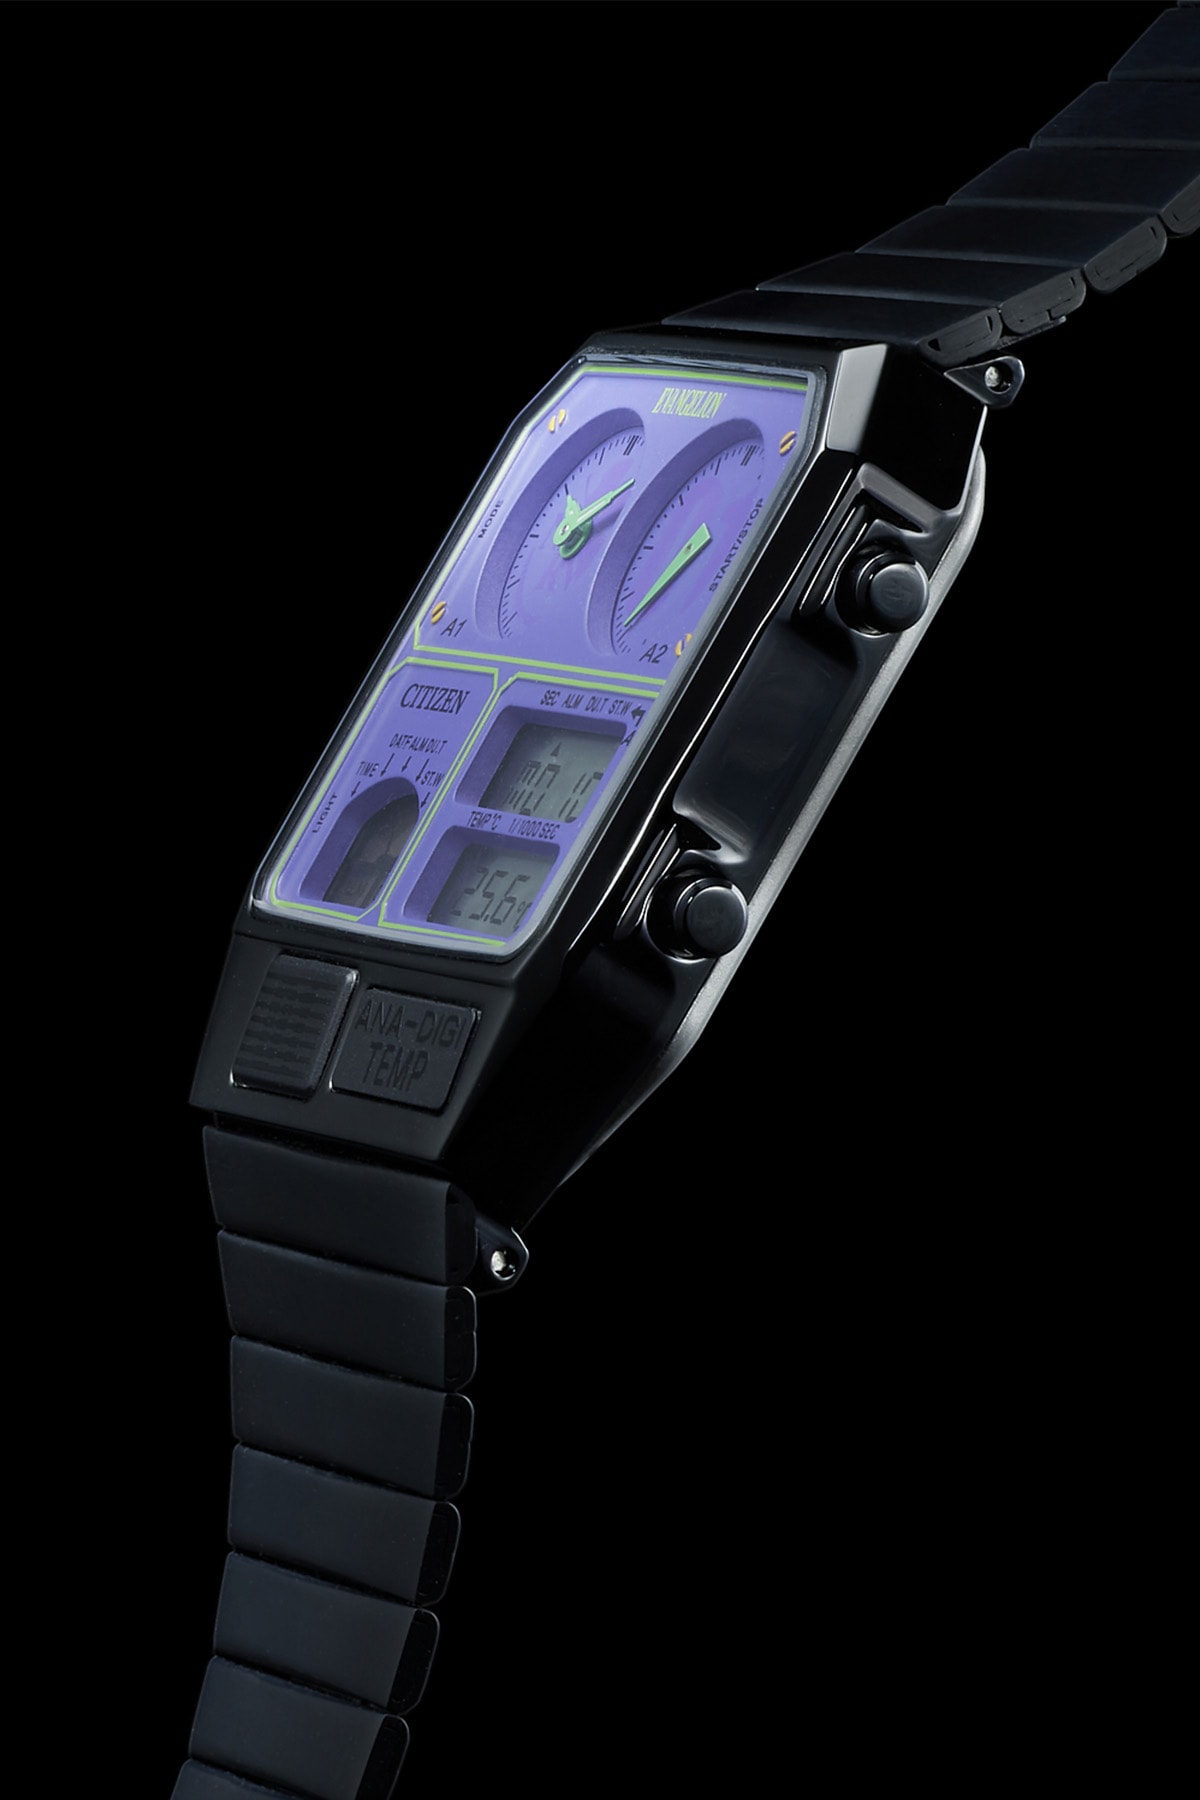 《新世紀福音戰士 Evangelion》x CITIZEN 全新聯乘錶款正式登場